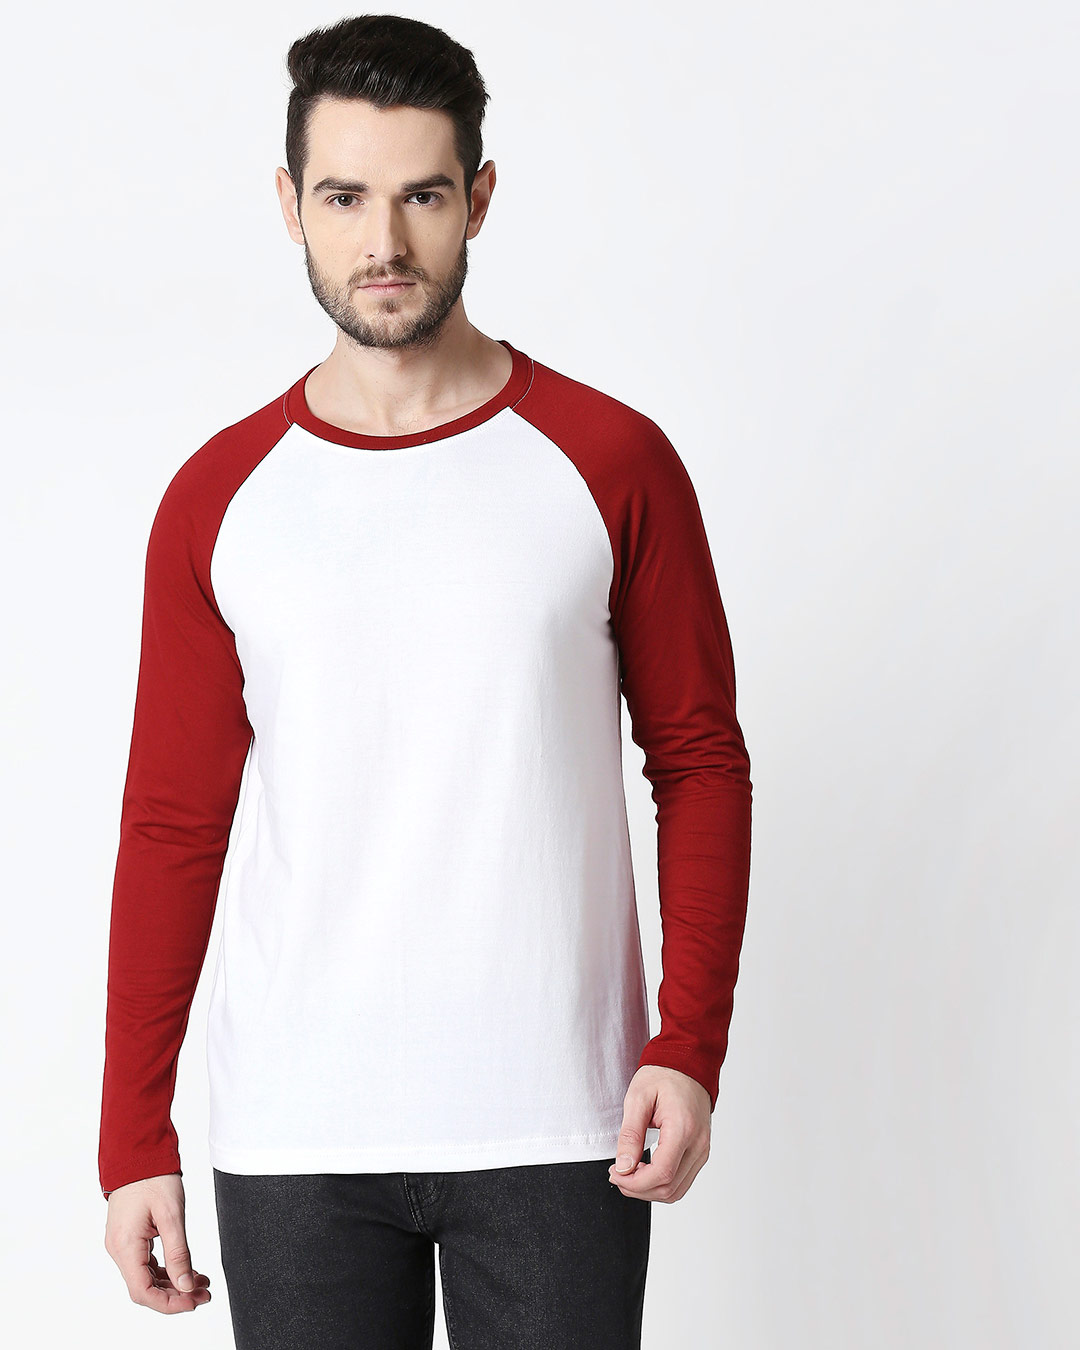 Buy White-Scarlet Full Sleeve Raglan for Men white,red Online at